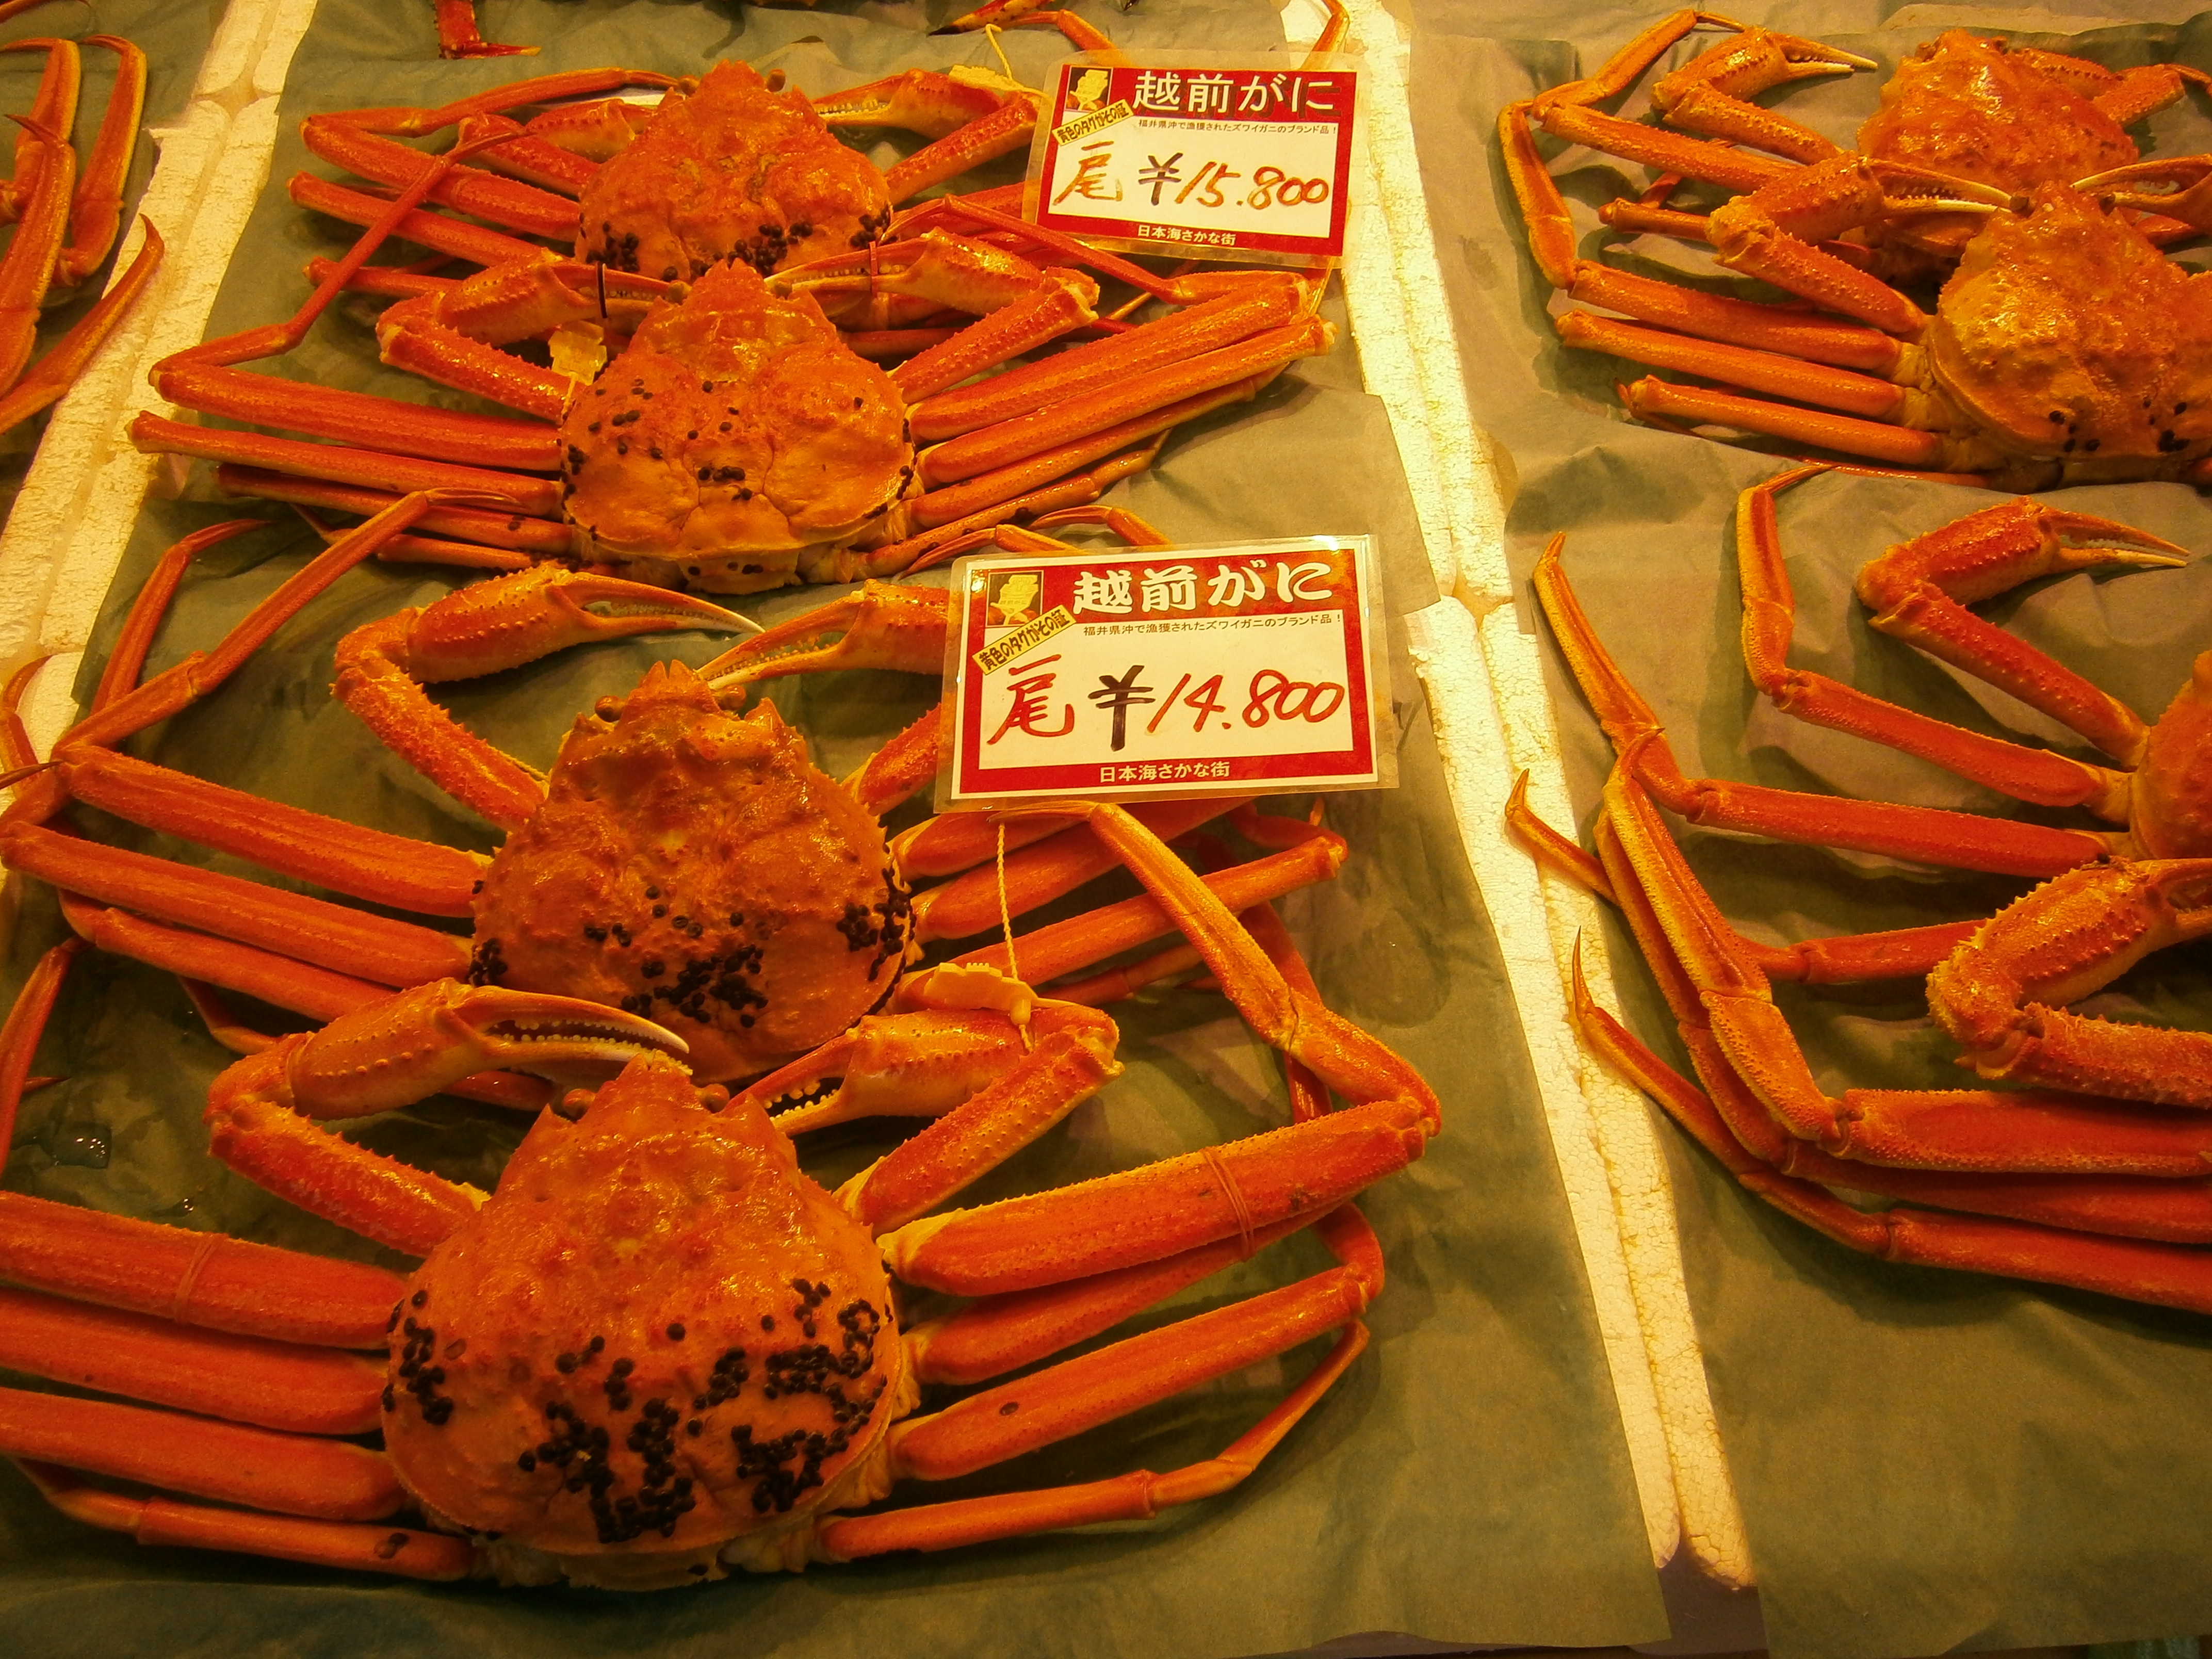 ヒルナンデスで北陸金沢で紹介された金箔や近江町市場で海鮮丼やカニを食べれる？